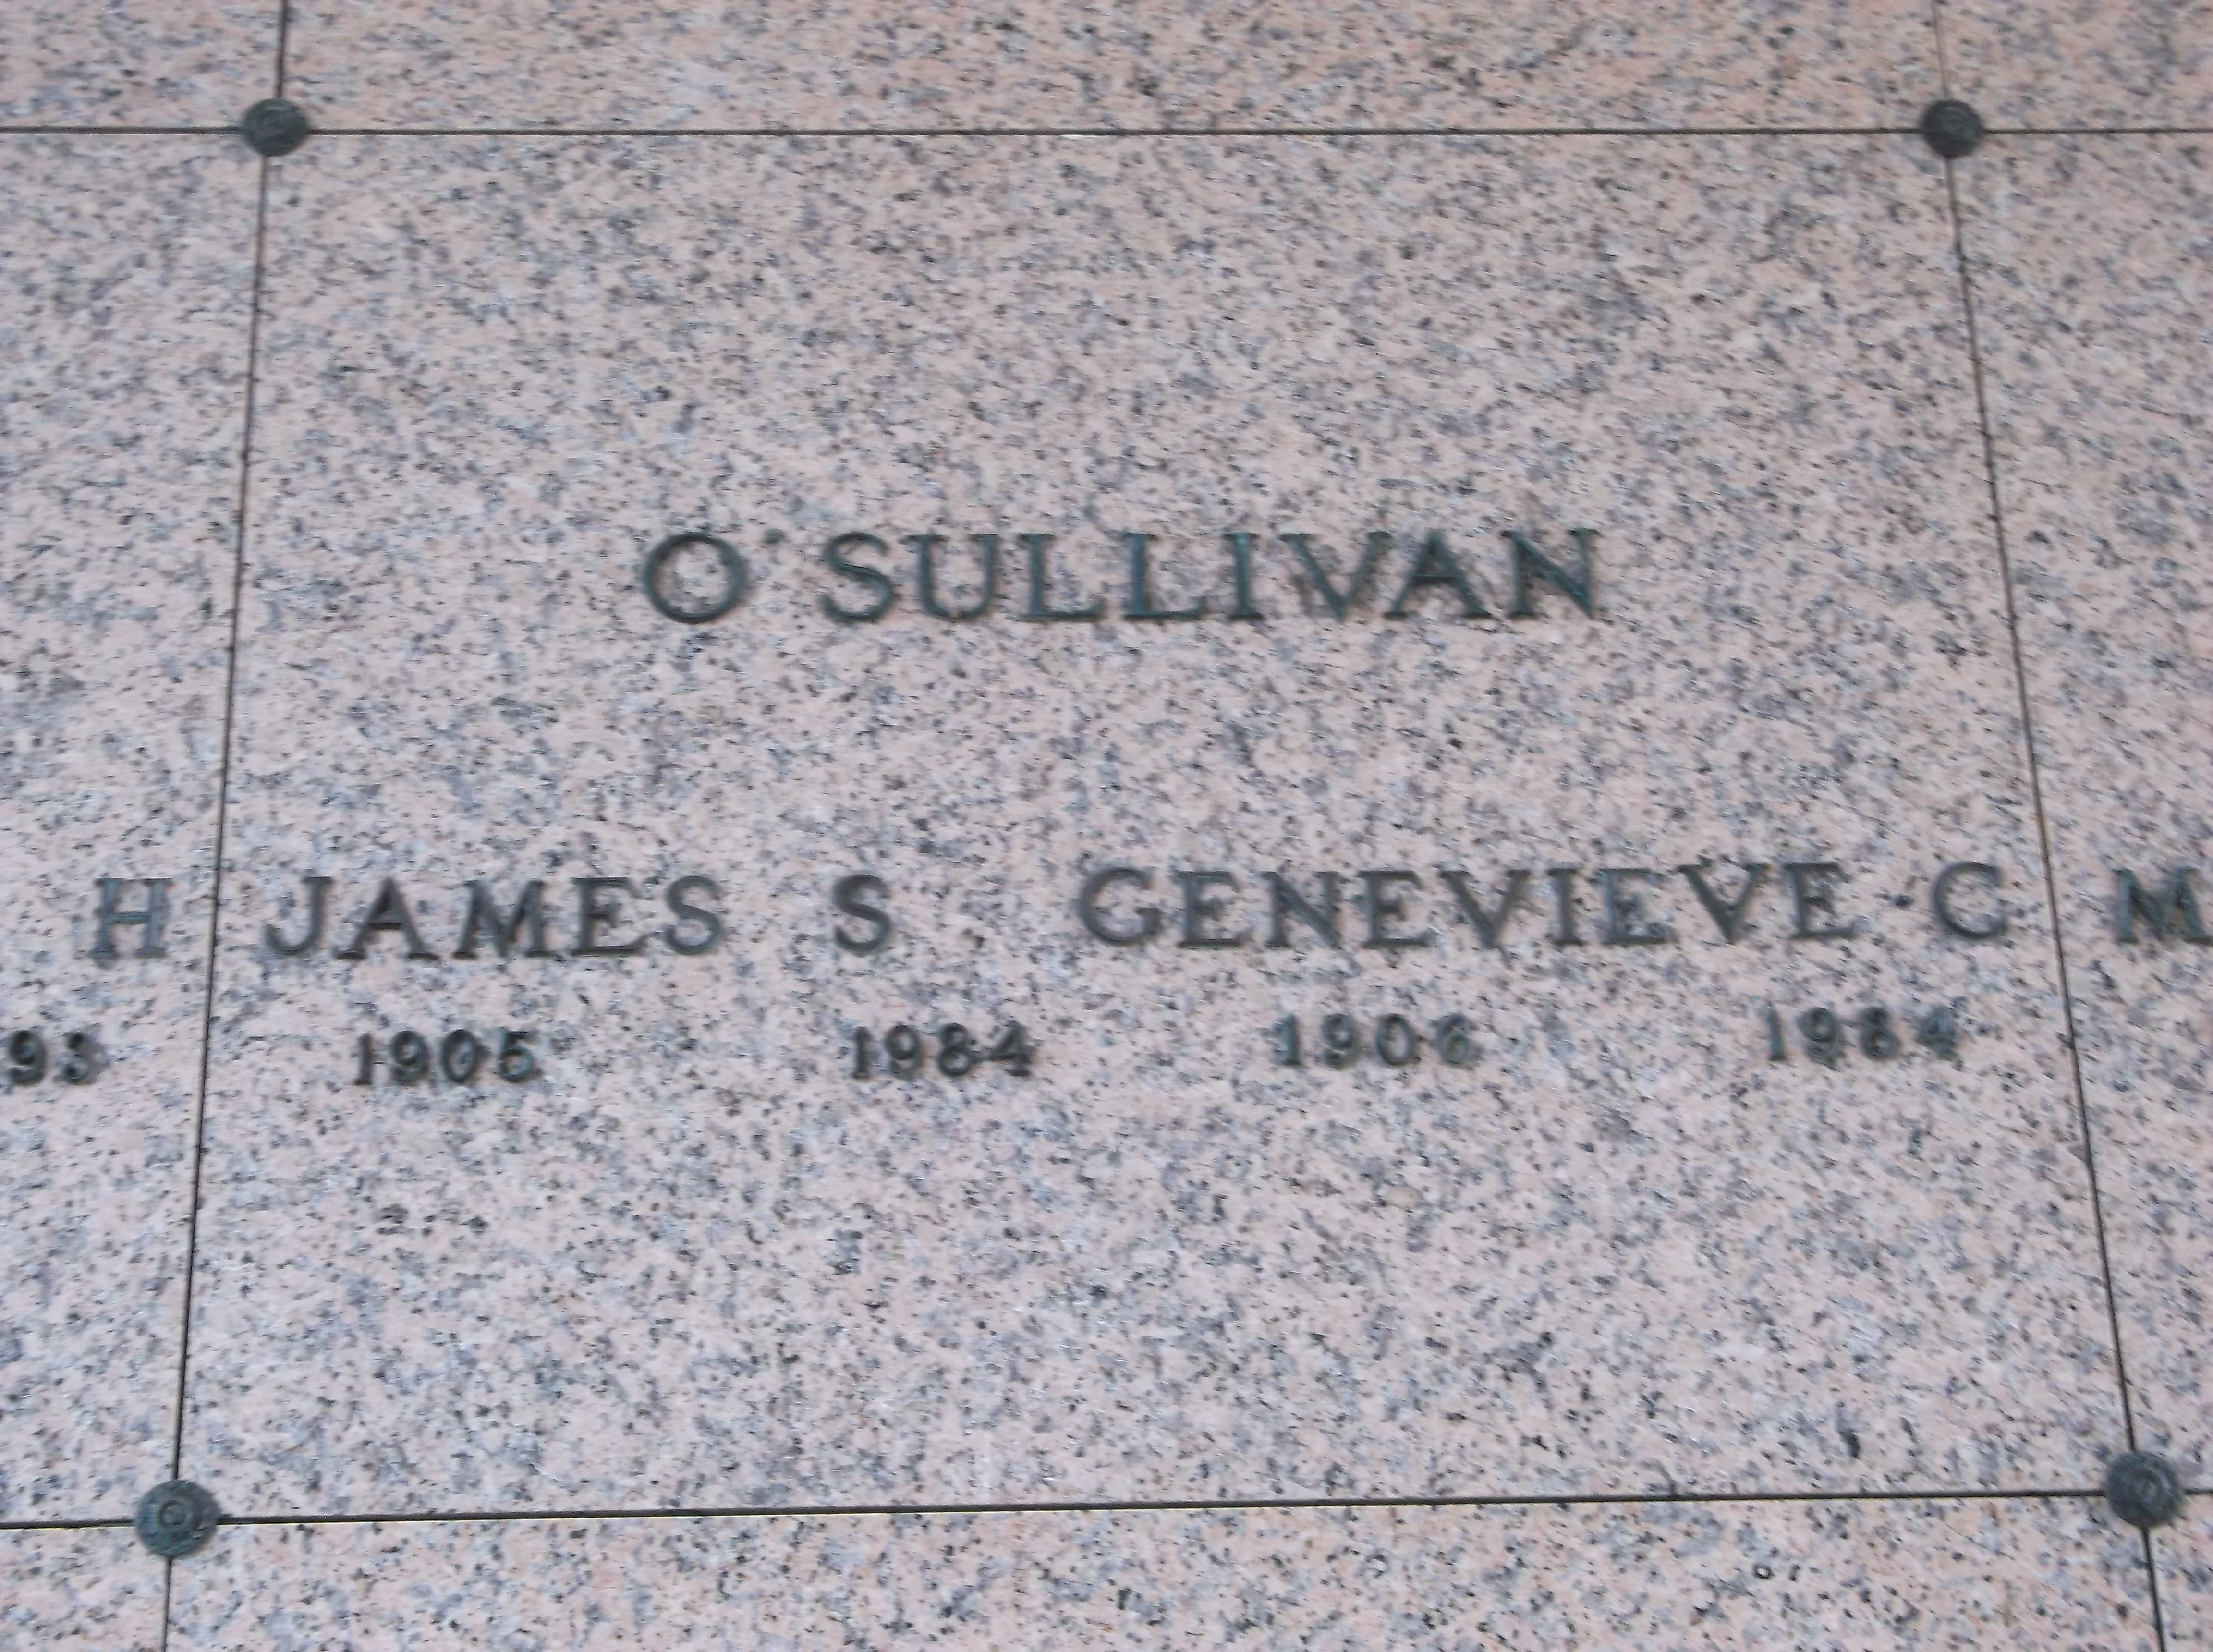 James S O'Sullivan